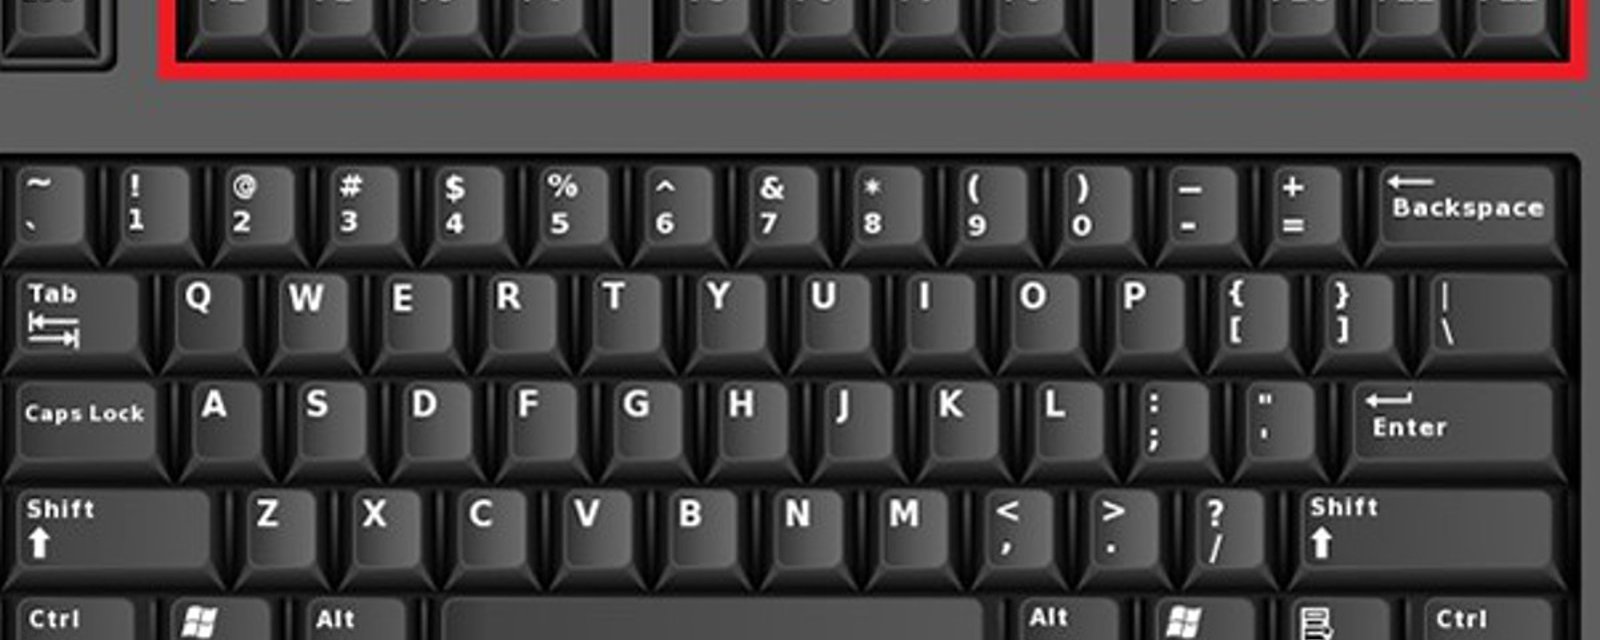 De F 1 à F 12, voici comment vous pourrez sauver des minutes précieuses, grâce à votre clavier! 